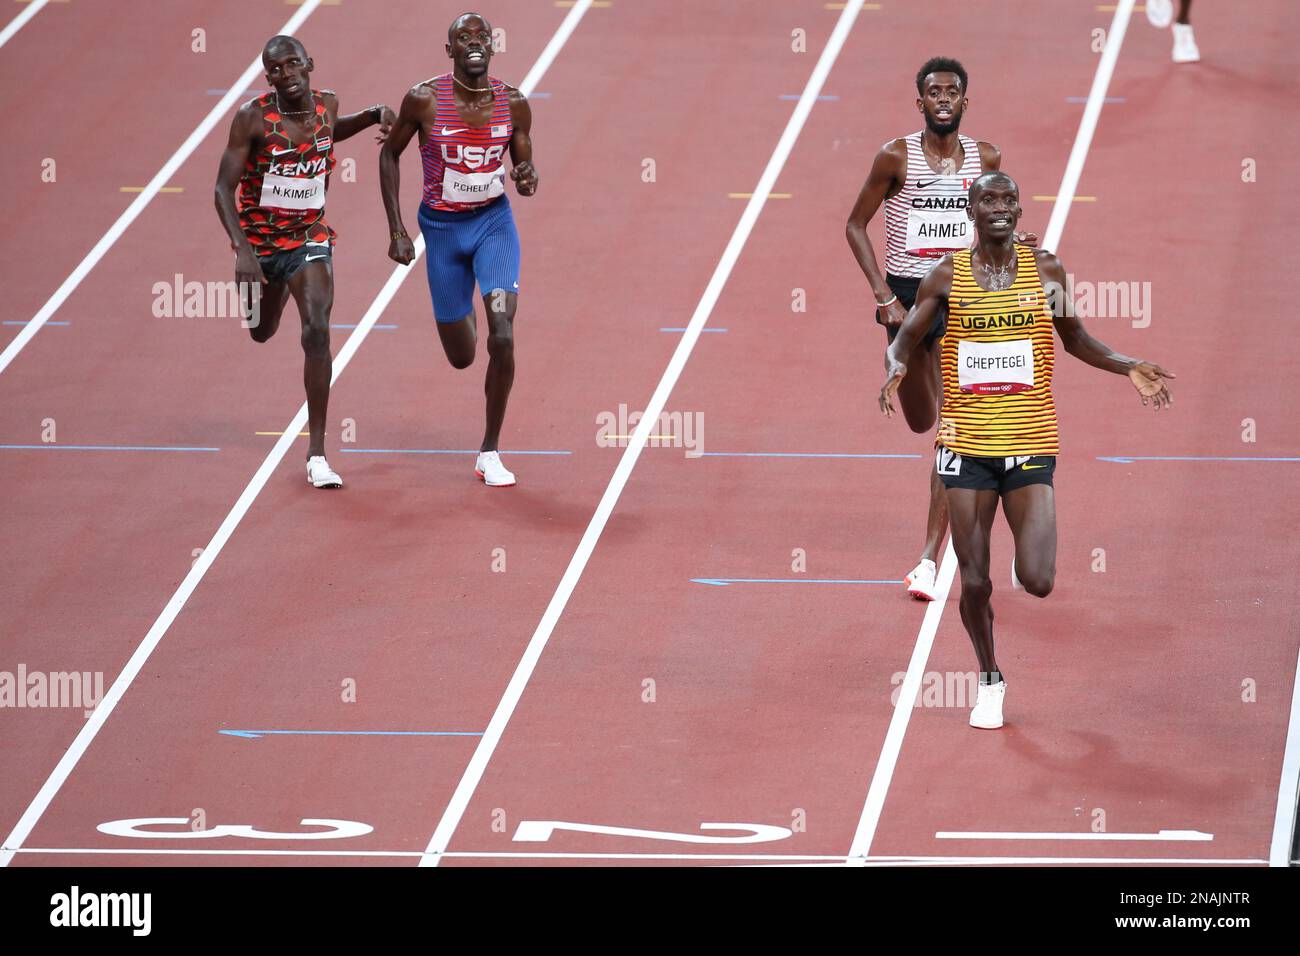 06. AUGUST 2021 – Tokio, Japan: Joshua Cheptegei aus Uganda gewinnt das Athletics Men's 5.000m Final vor Mohammed Ahmed aus Kanada und Paul Cheli Stockfoto